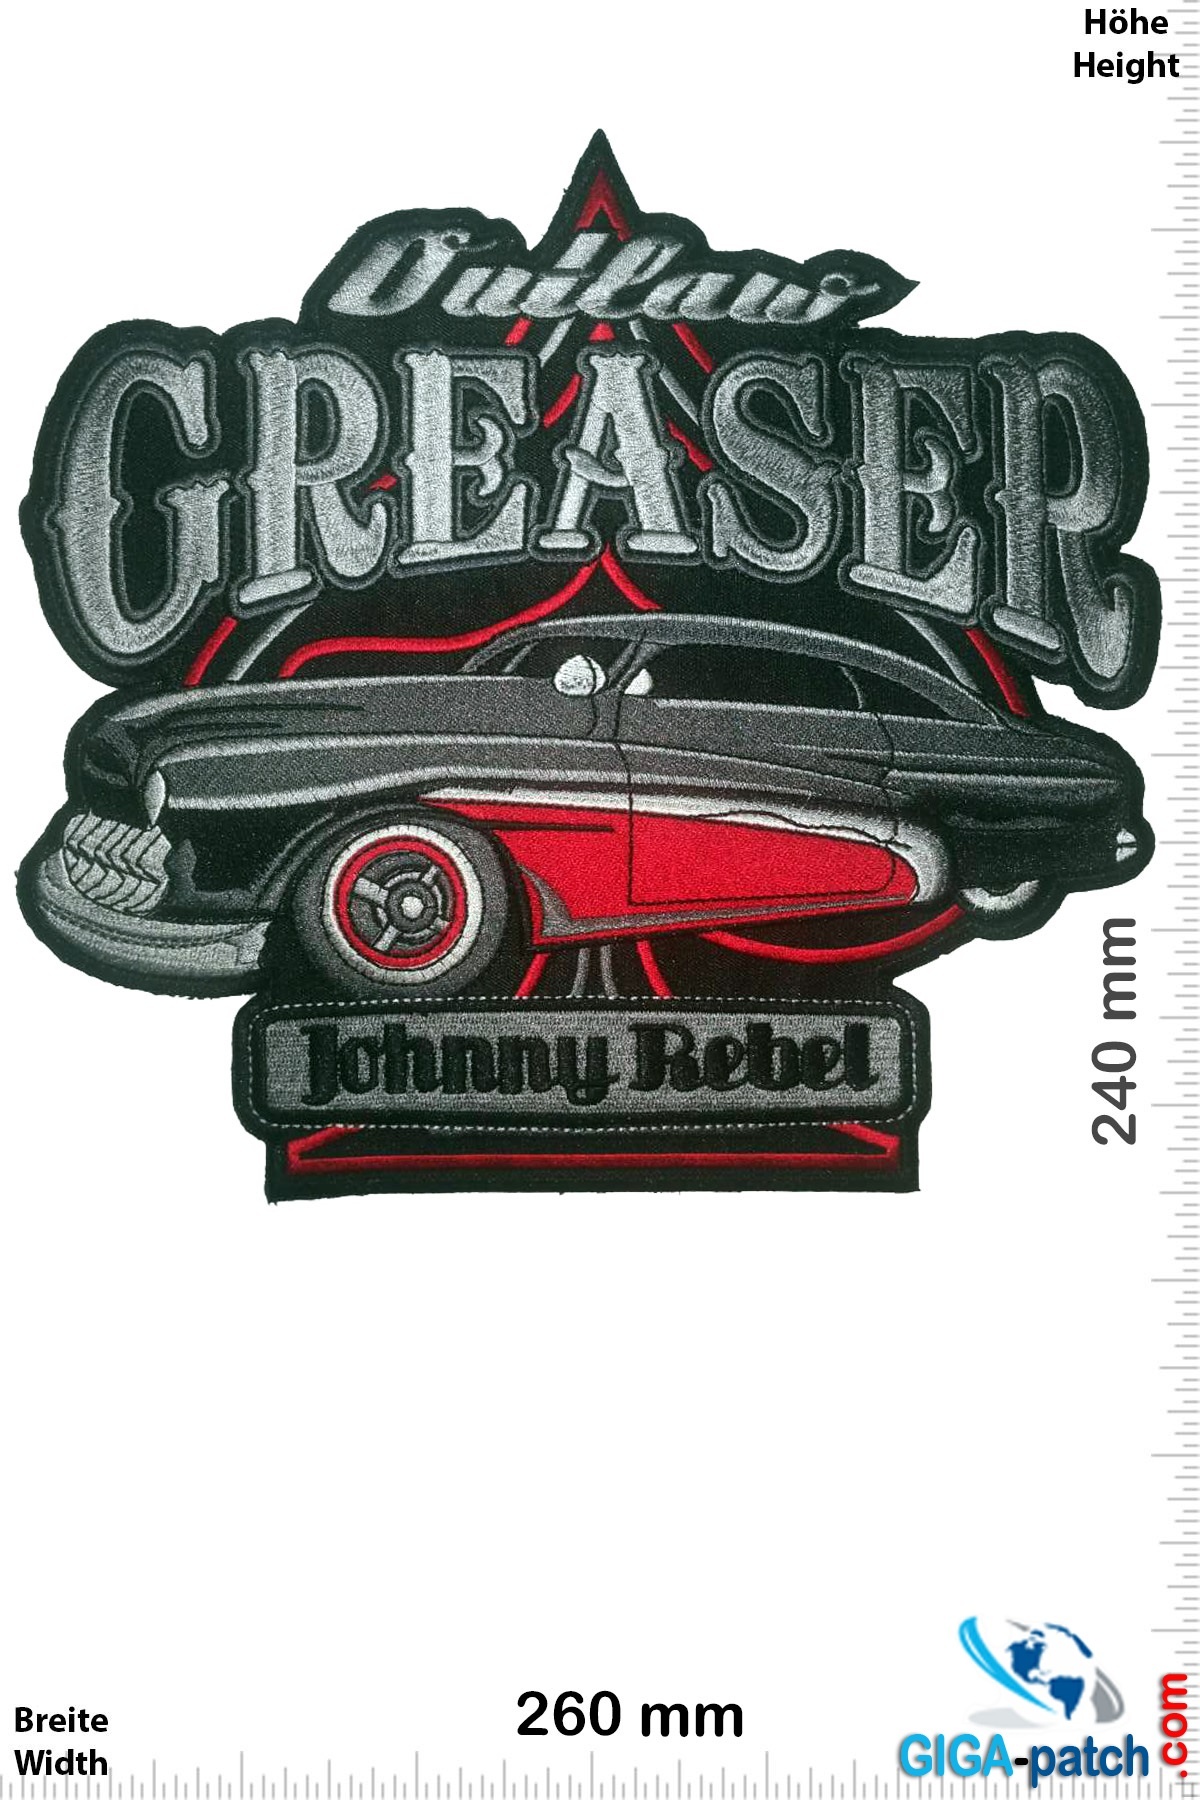 Hotrod Outlaw Greaser - Johnny Rebel -  26 cm